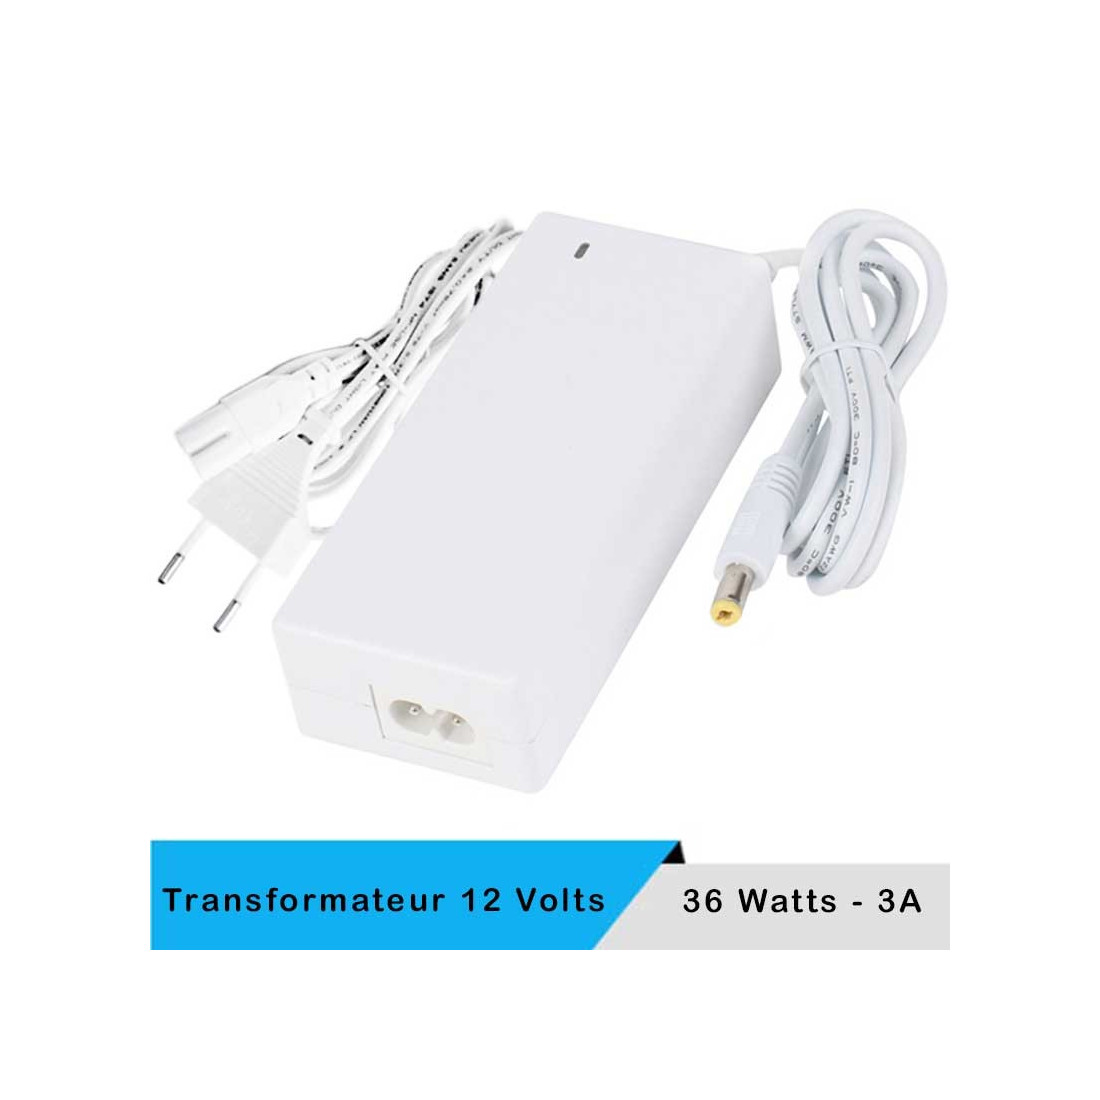 Transformateur LED 12 volts 36 watts blanc + câble secteur